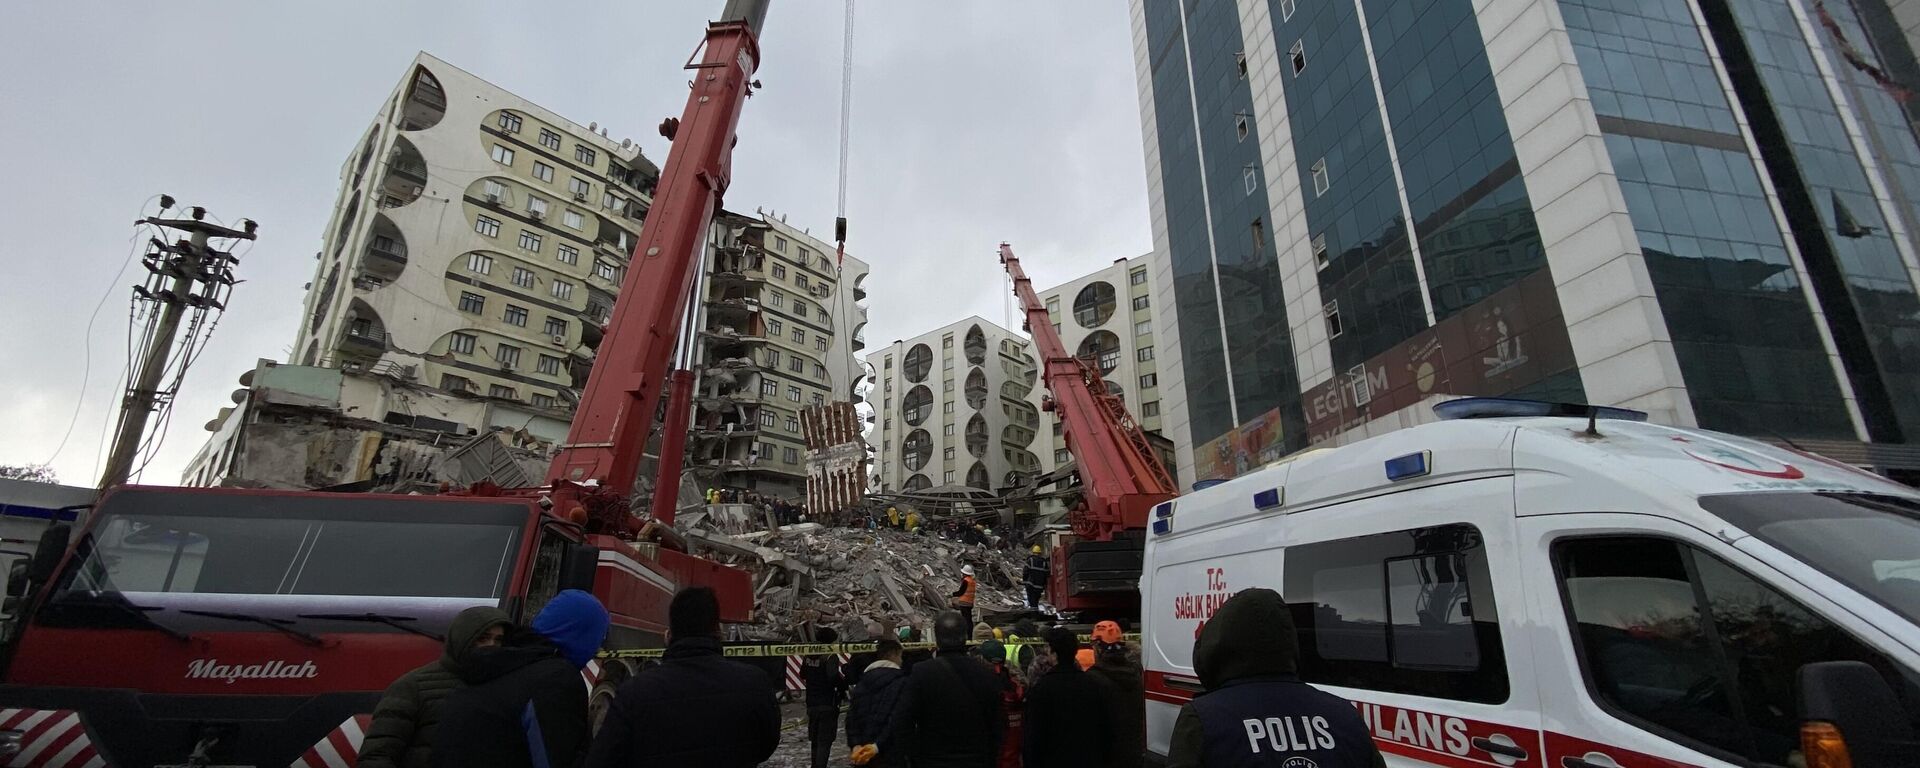 Diyarbakır'da hasarlı binaların yıkım işlemi, Diyarbakır Barosu'nun ileride hukuki ve cezai sorumluluk açısından hak kayıplarına sebebiyet vermemesi için 1. Sulh Hukuk Mahkemesine yaptığı başvuru ile durduruldu. - Sputnik Türkiye, 1920, 24.02.2023